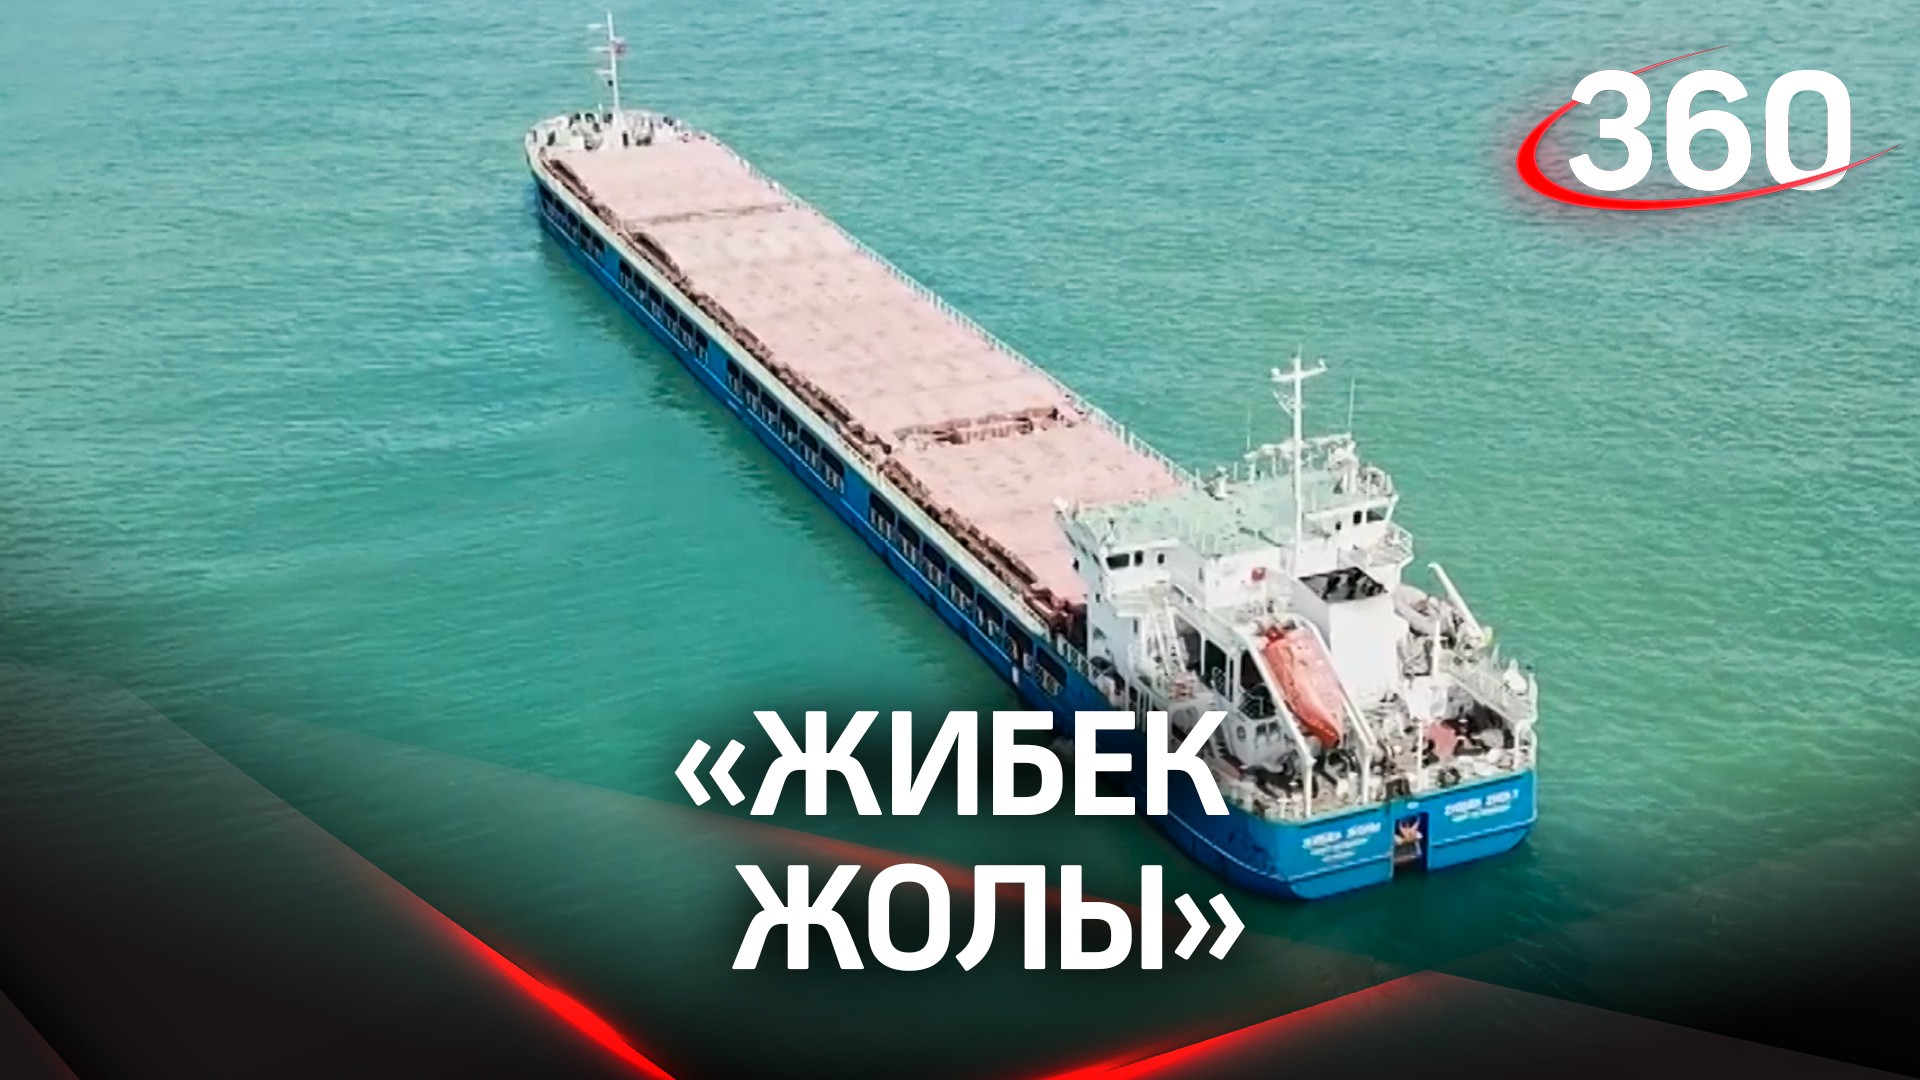 Турция задержала судно с зерном под российским флагом «Жибек Жолы»?